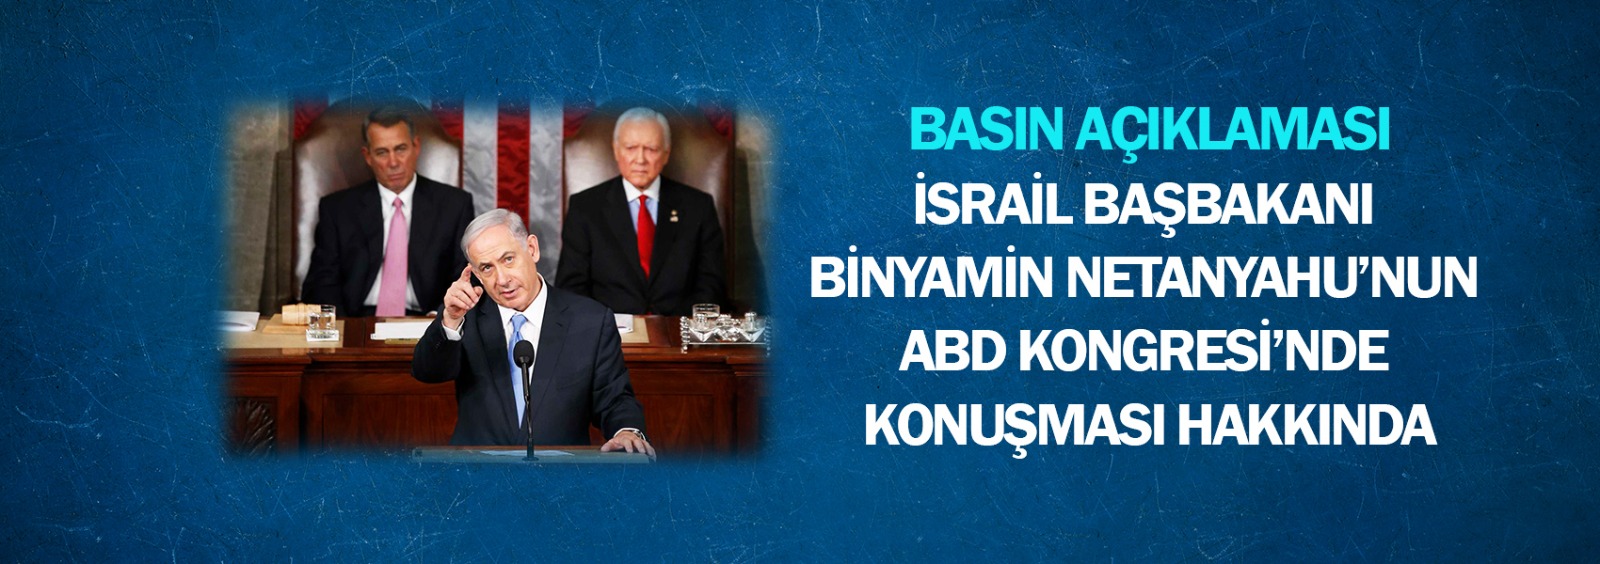 İsrail Başbakanı Binyamin Netanyahu’nun ABD Kongresi’nde Konuşması Hakkında Basın Açıklaması